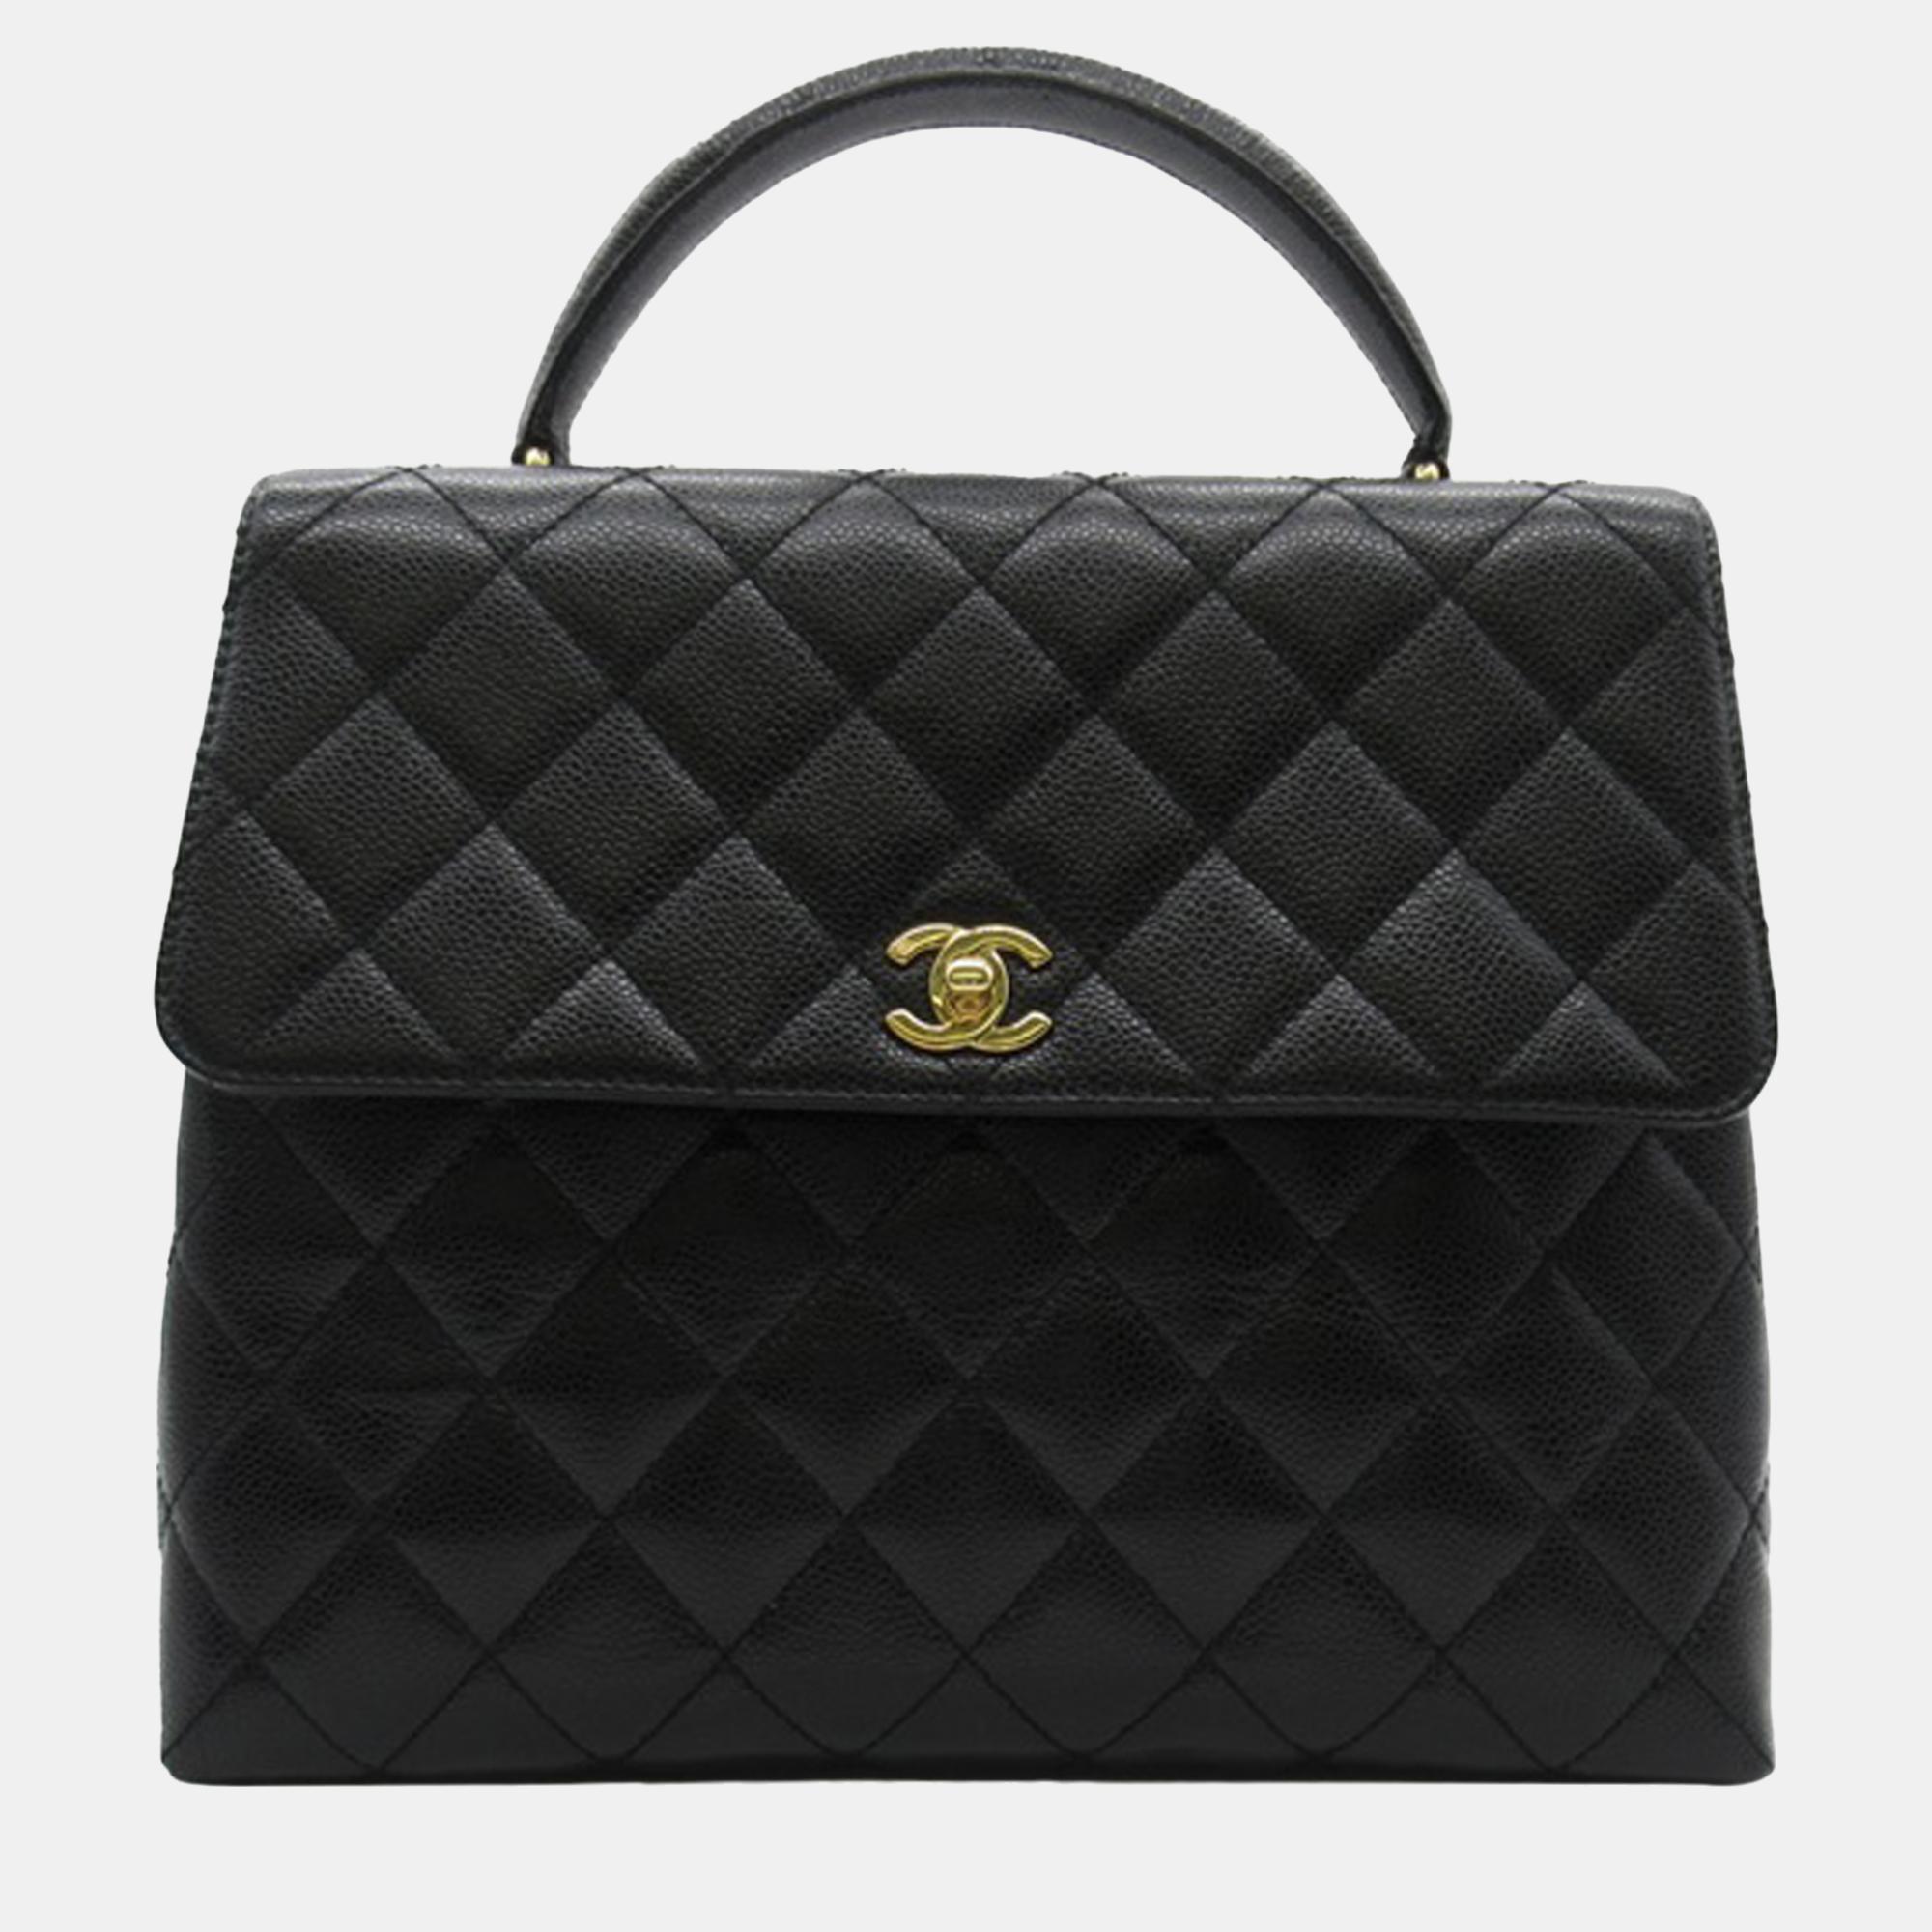 

Chanel Black Caviar Kelly Top Handle Bag